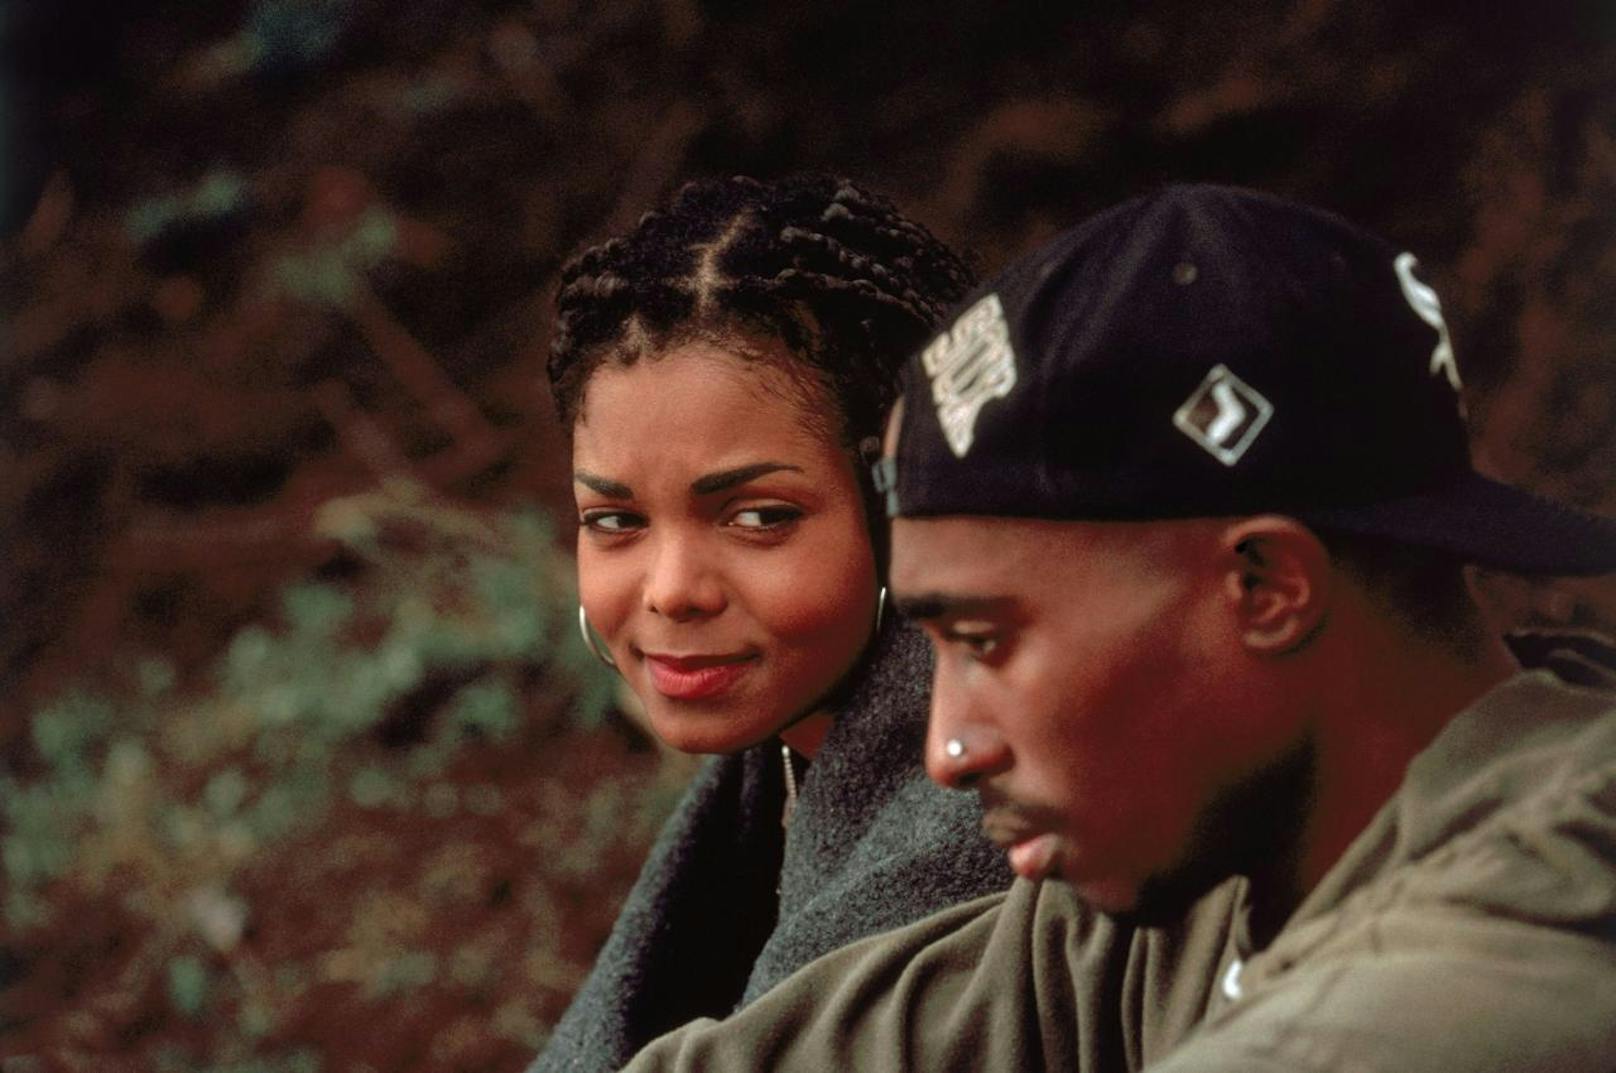 In <b>"Poetic Justice" (1993)</b> waren Janet Jackson und Tupac Shakur das perfekte Traumpaar. Doch hinter den Kulissen ging es gar nicht romantisch zu. Janet weigerte sich nämlich partout, den Frauenheld zu küssen. Sie verlangte sogar, dass er sich auf AIDS testen lässt, Tupac wehrte sich jedoch dagegen.